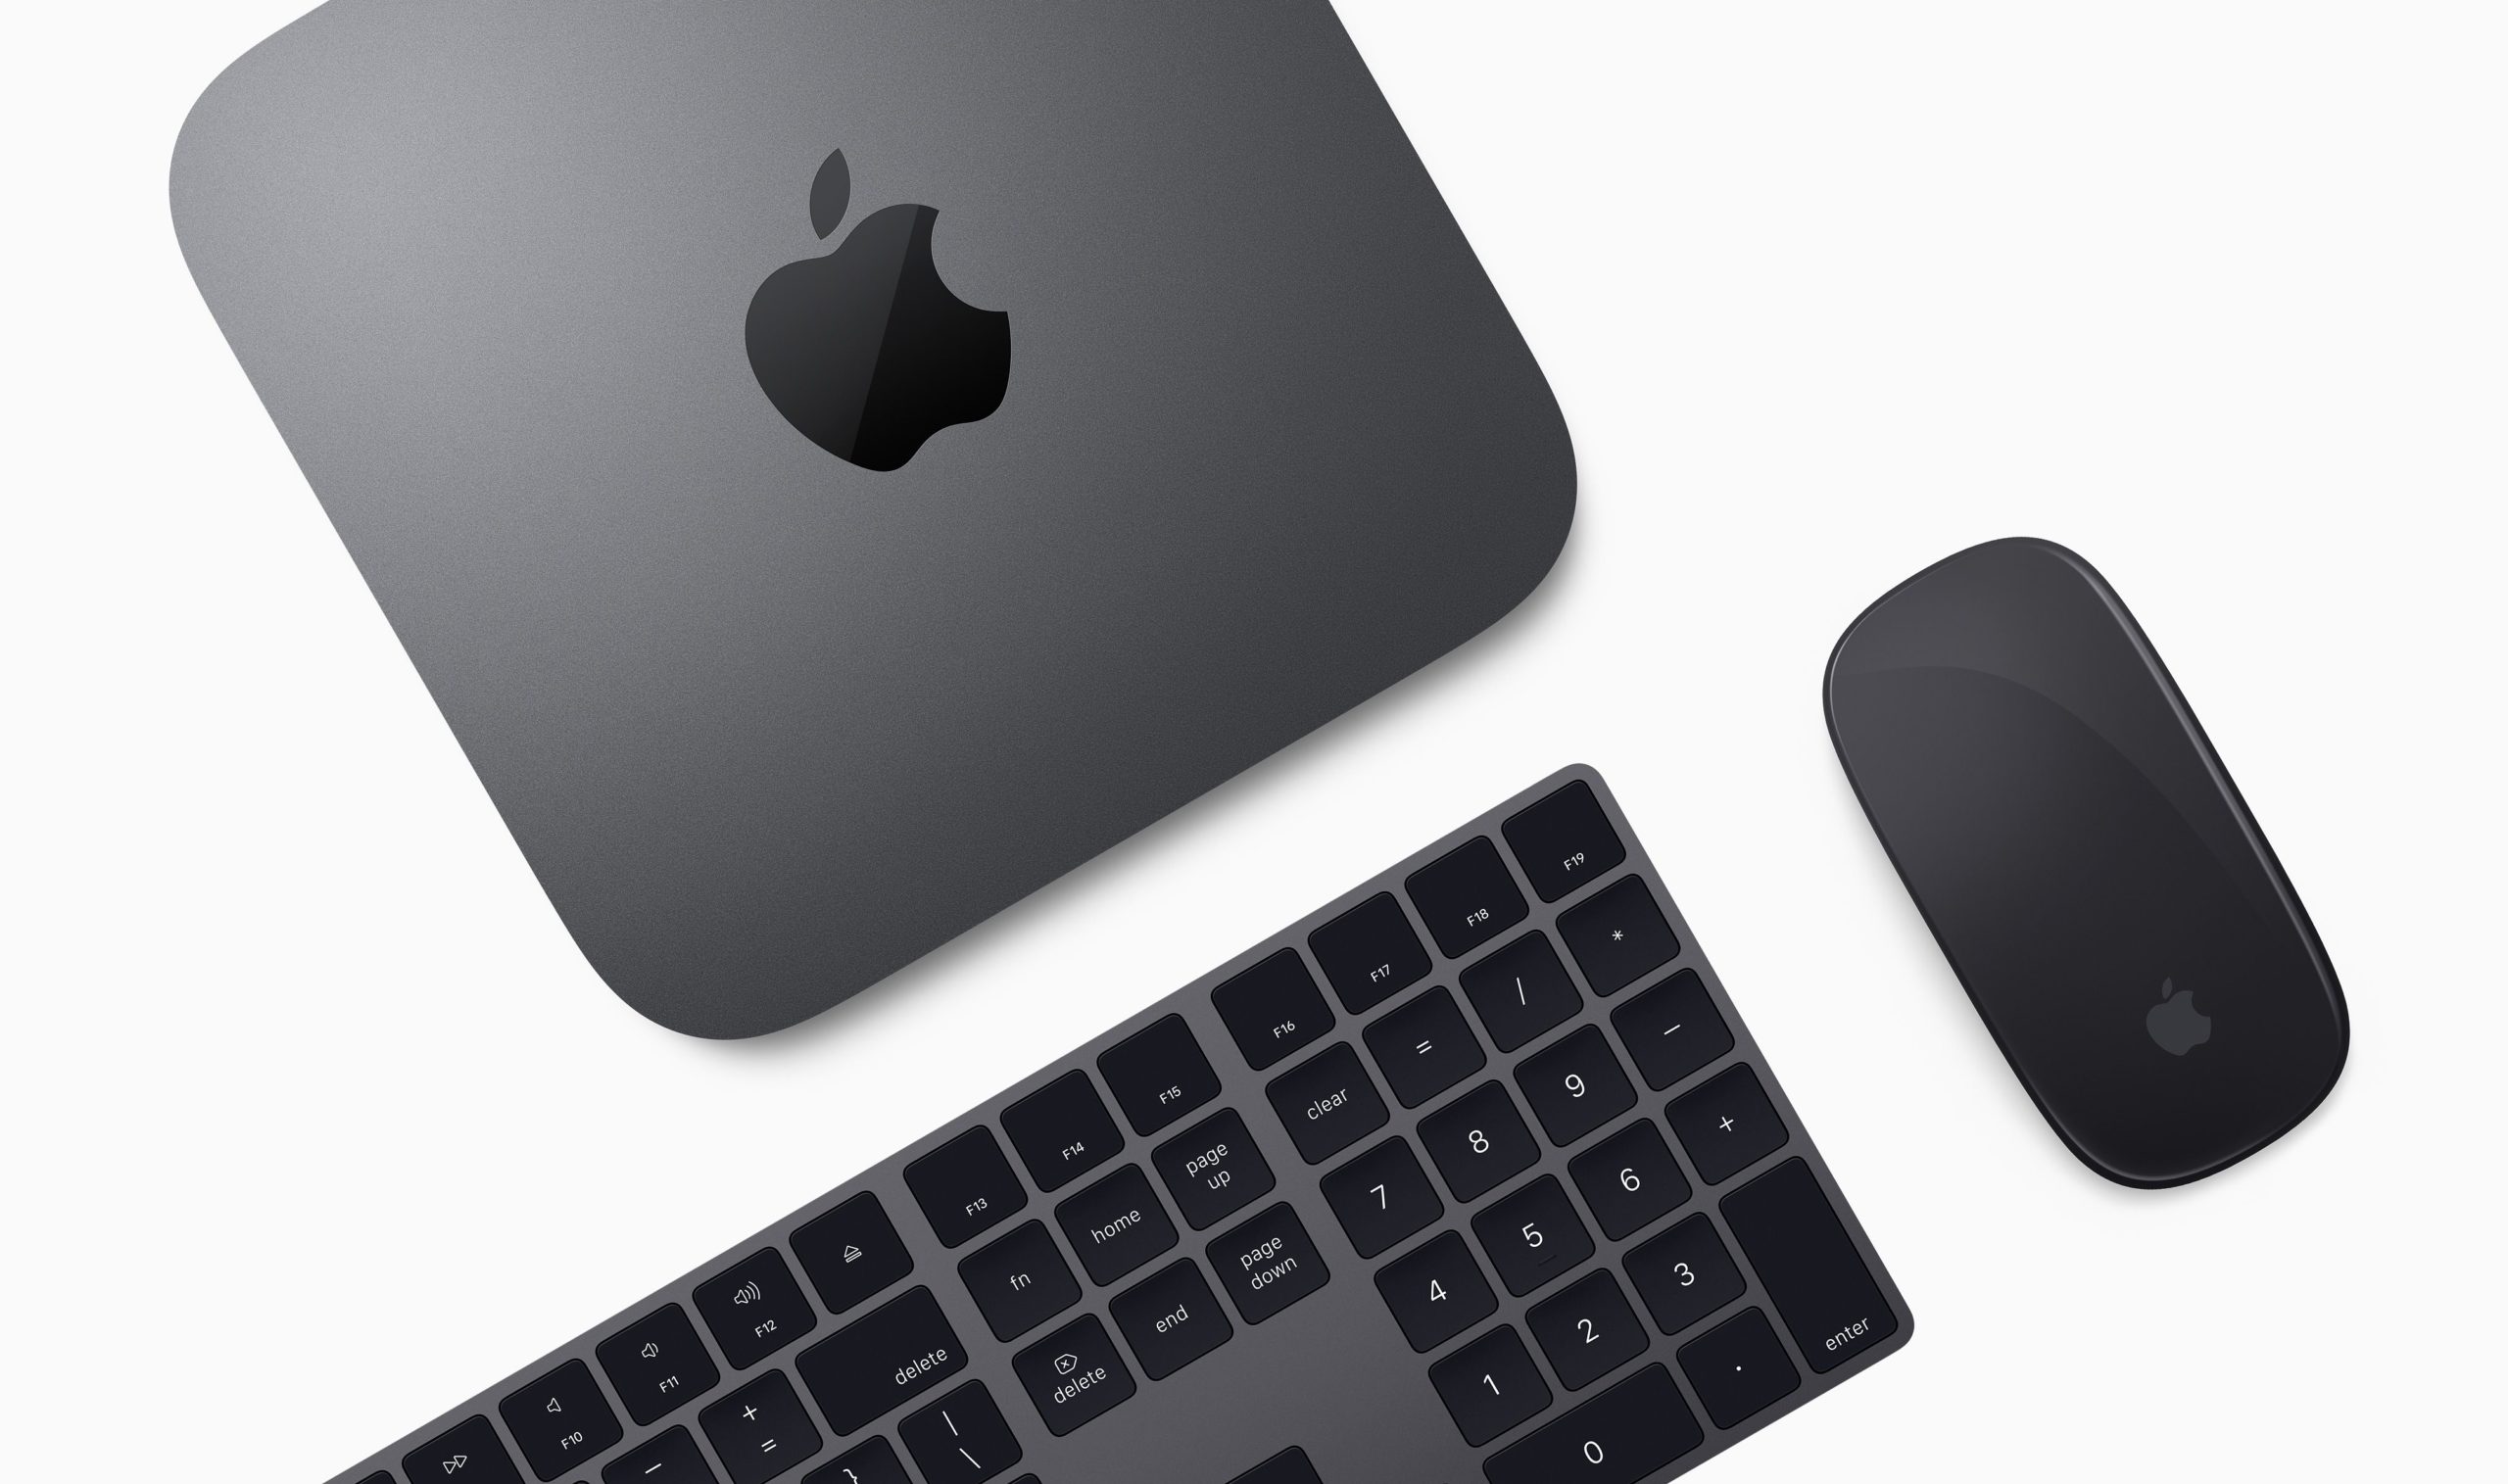 Uus Mac mini võrdlusalus ületab iMacsi skoori